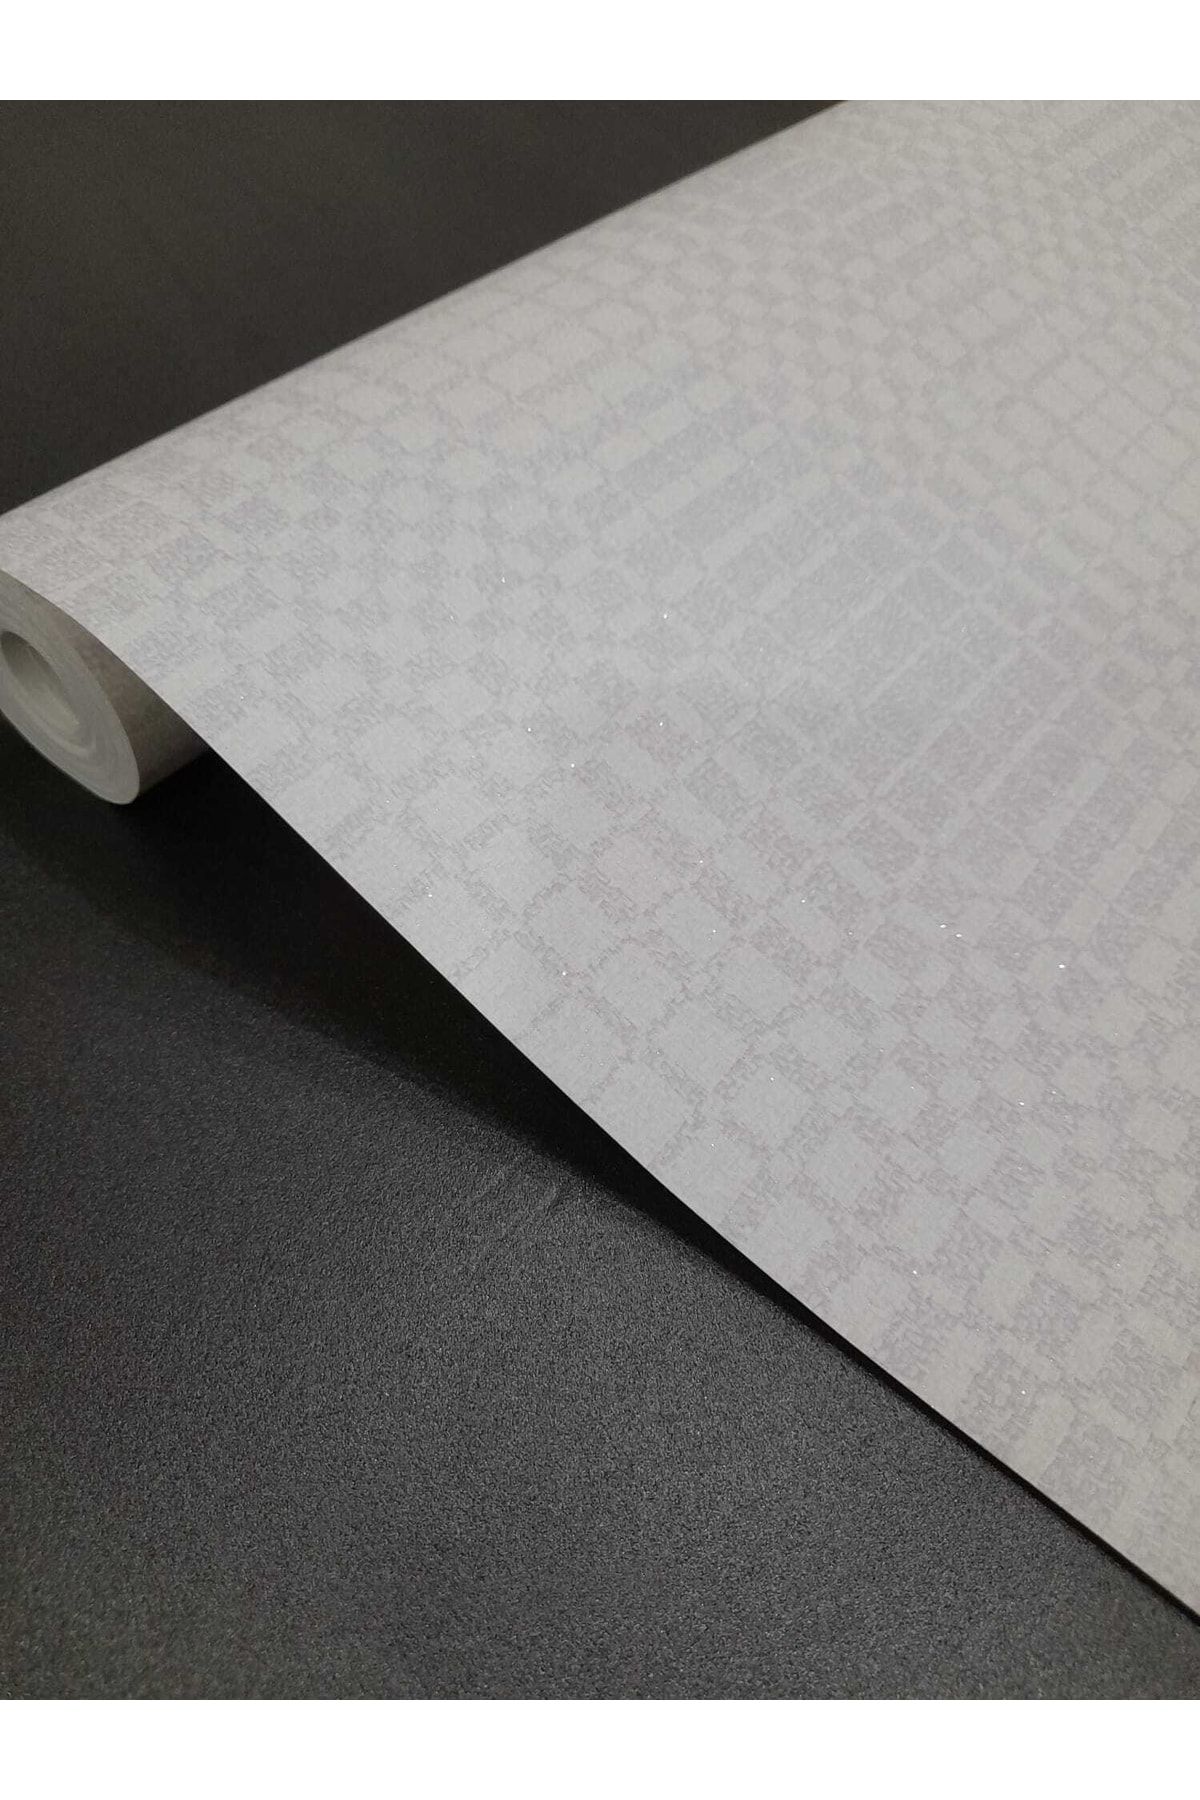 oskar Kare Desenli Simli % 100 Silinebilir Duvar Kağıdı ( 5m2)